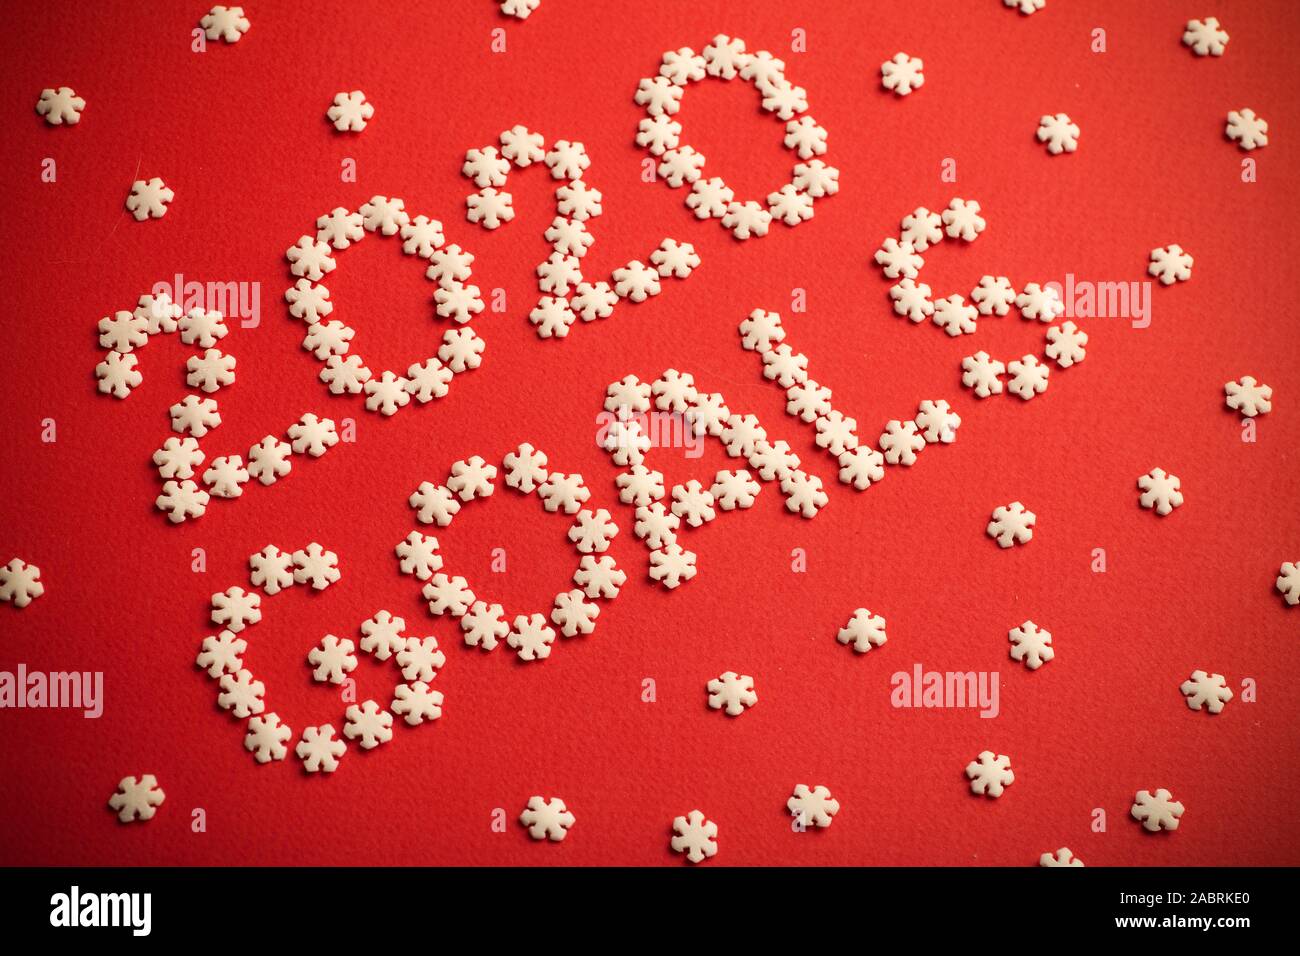 Gli obiettivi 2020. Creative iscrizione "2020 Obiettivi" scritto in fiocchi di neve bianca su sfondo rosso per il design. Anno nuovo concetto 2020. Foto Stock